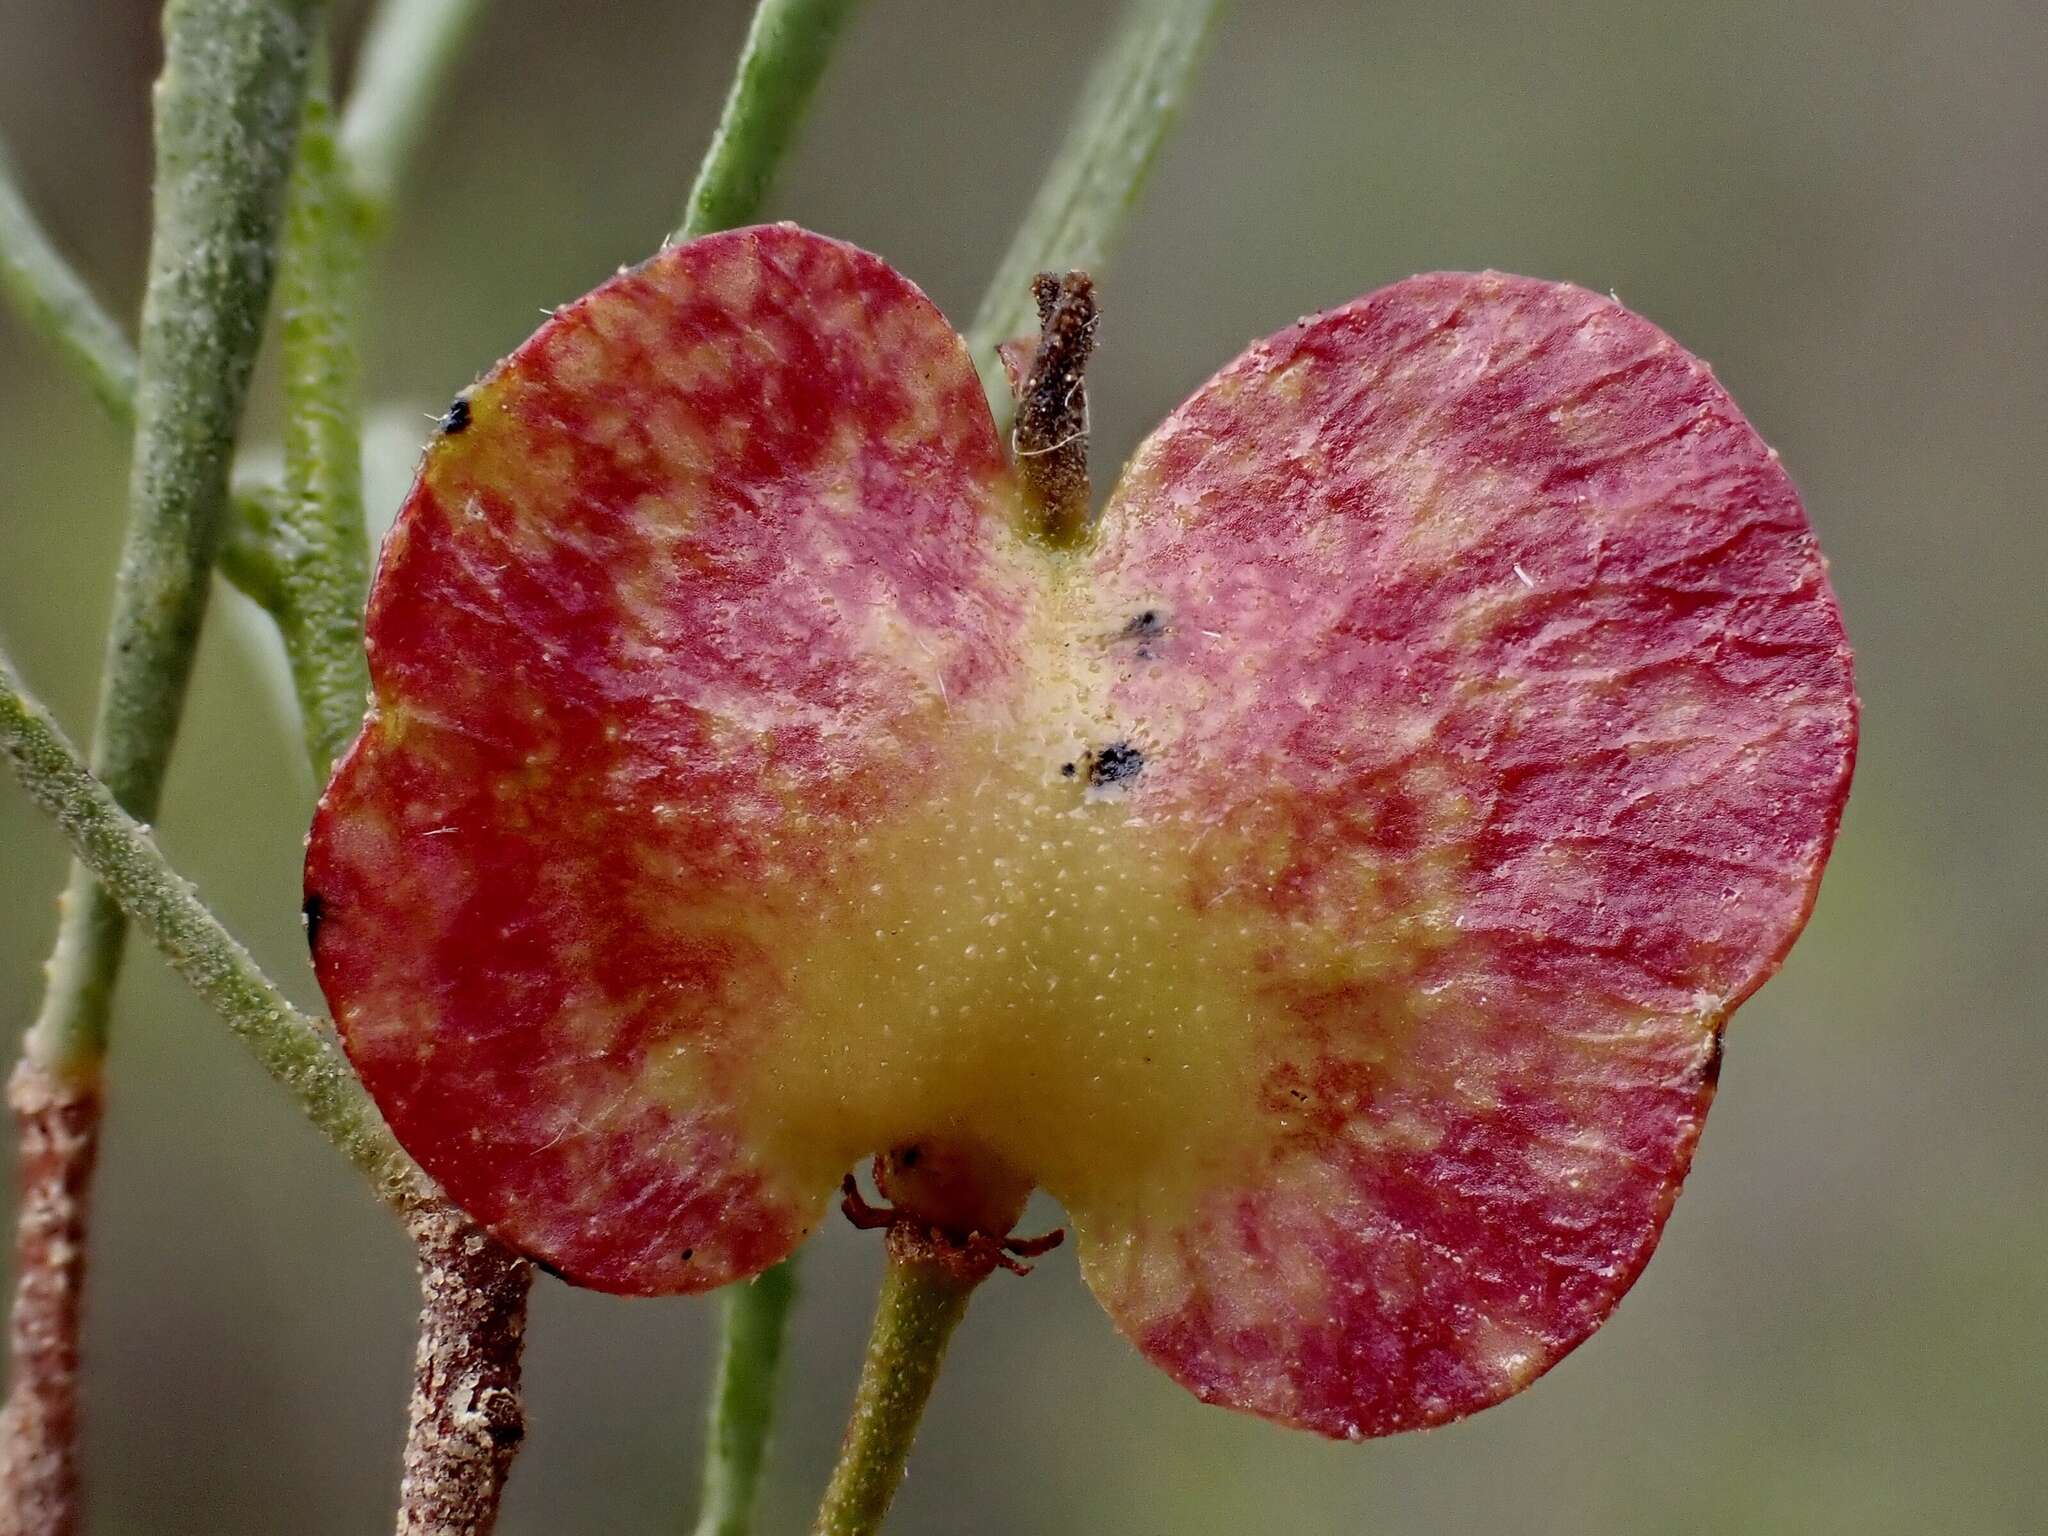 Image of narrow-leaf hopbush